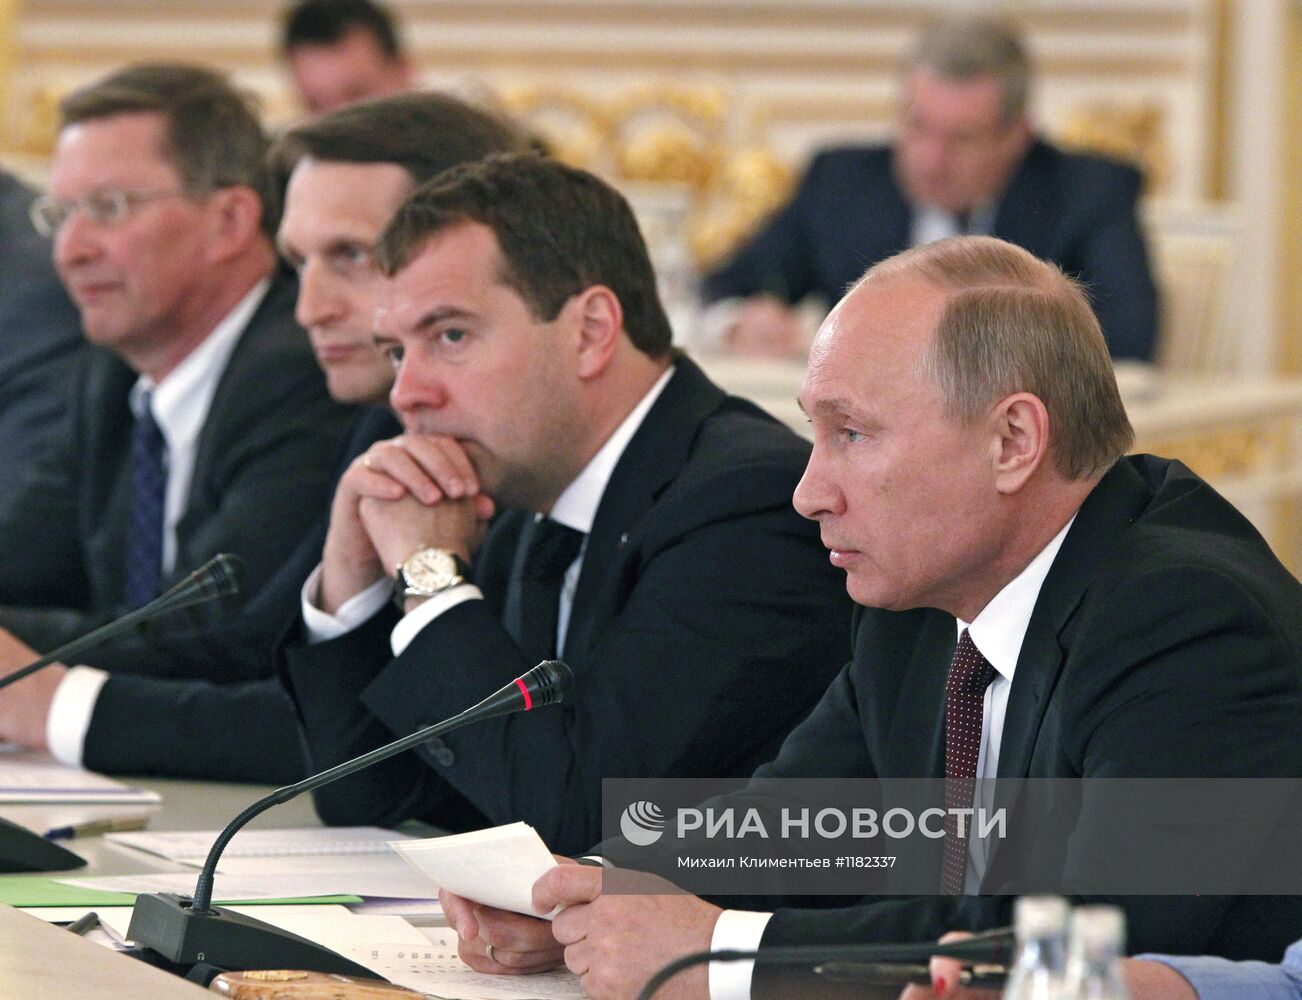 Первое заседание Госсовета РФ в новом составе в Кремле